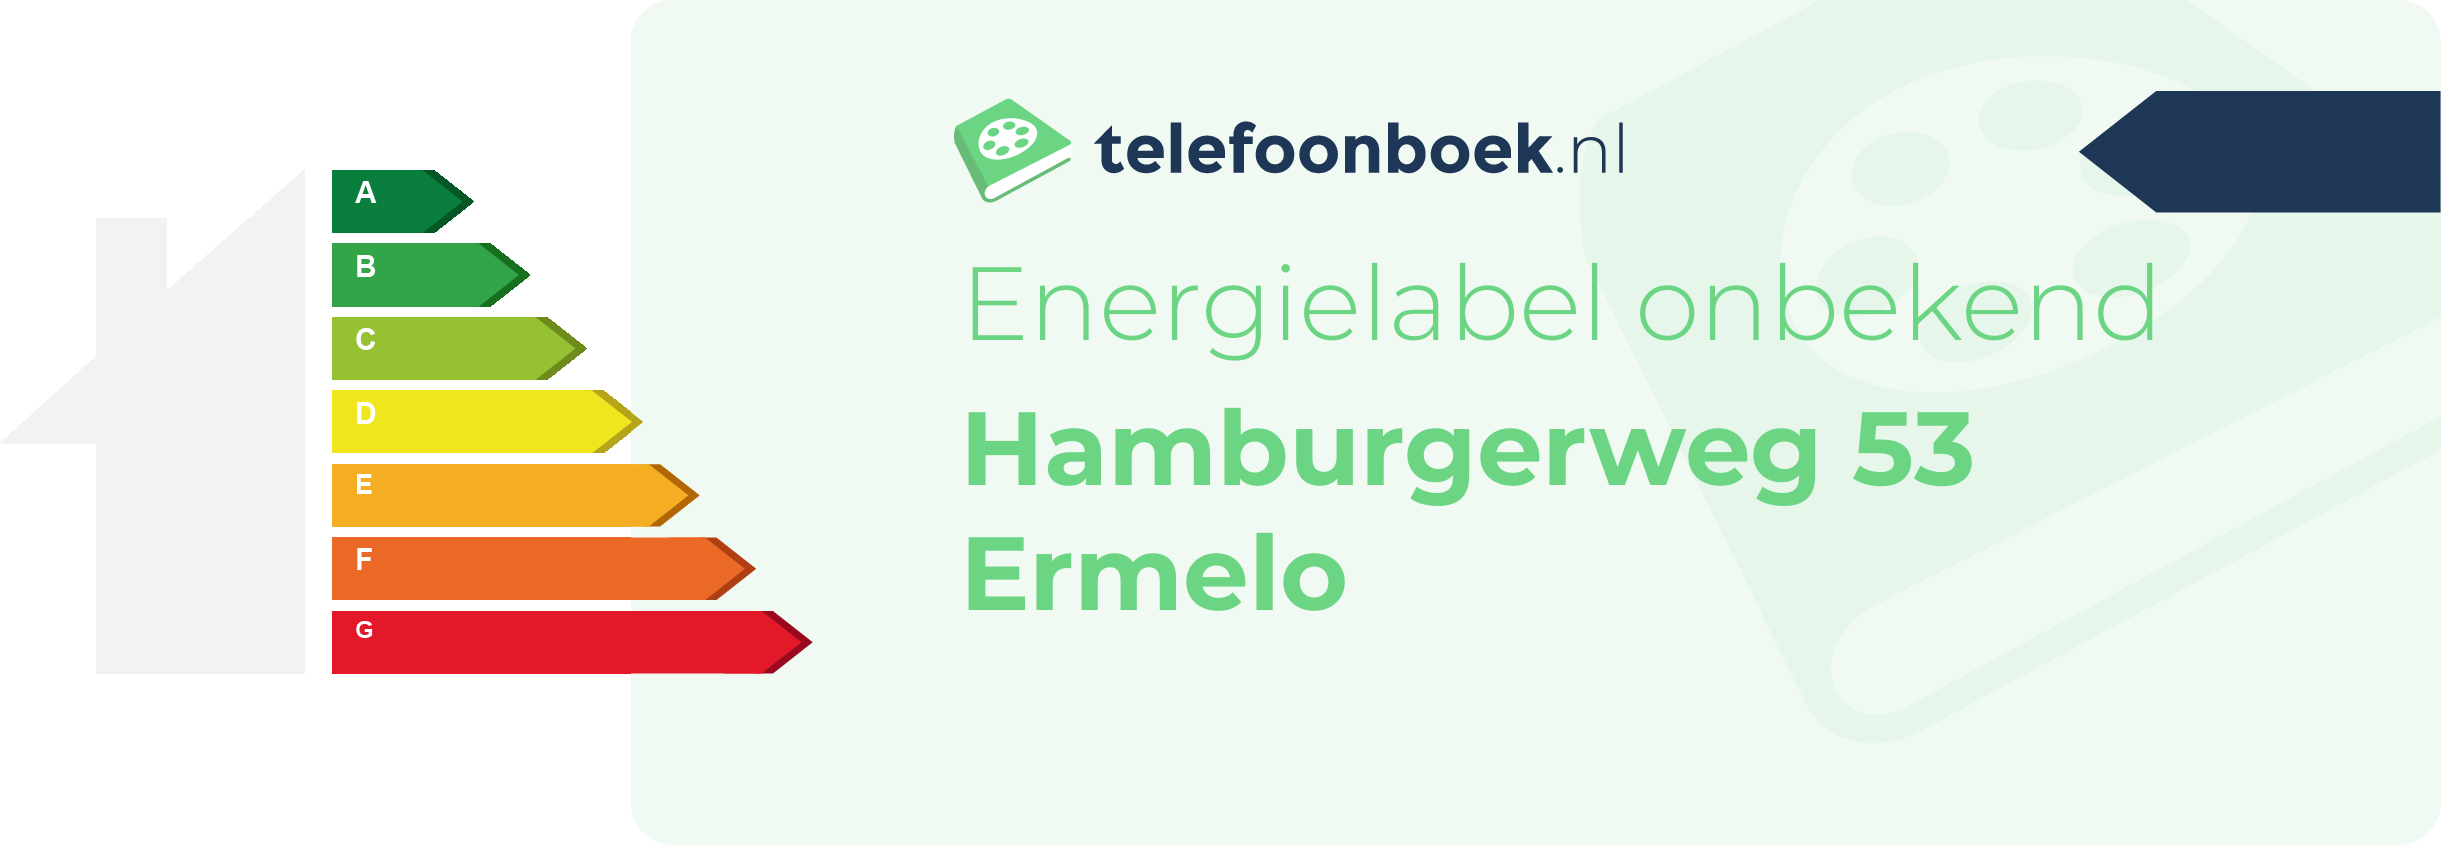 Energielabel Hamburgerweg 53 Ermelo